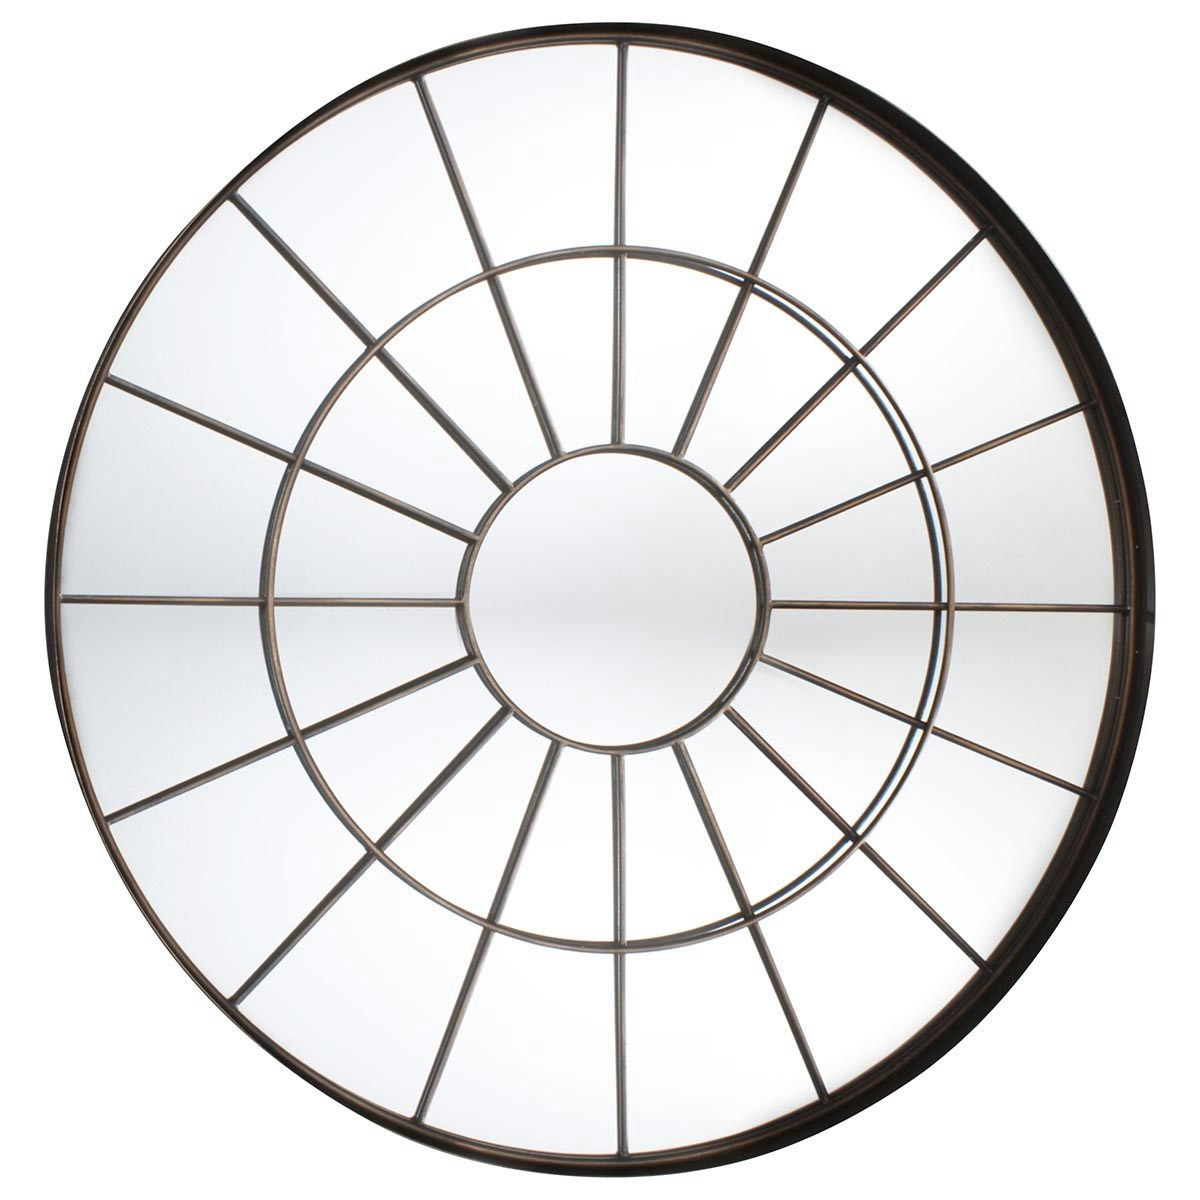 Accents Battersea round bronze window mirror 1005 x 1005mm